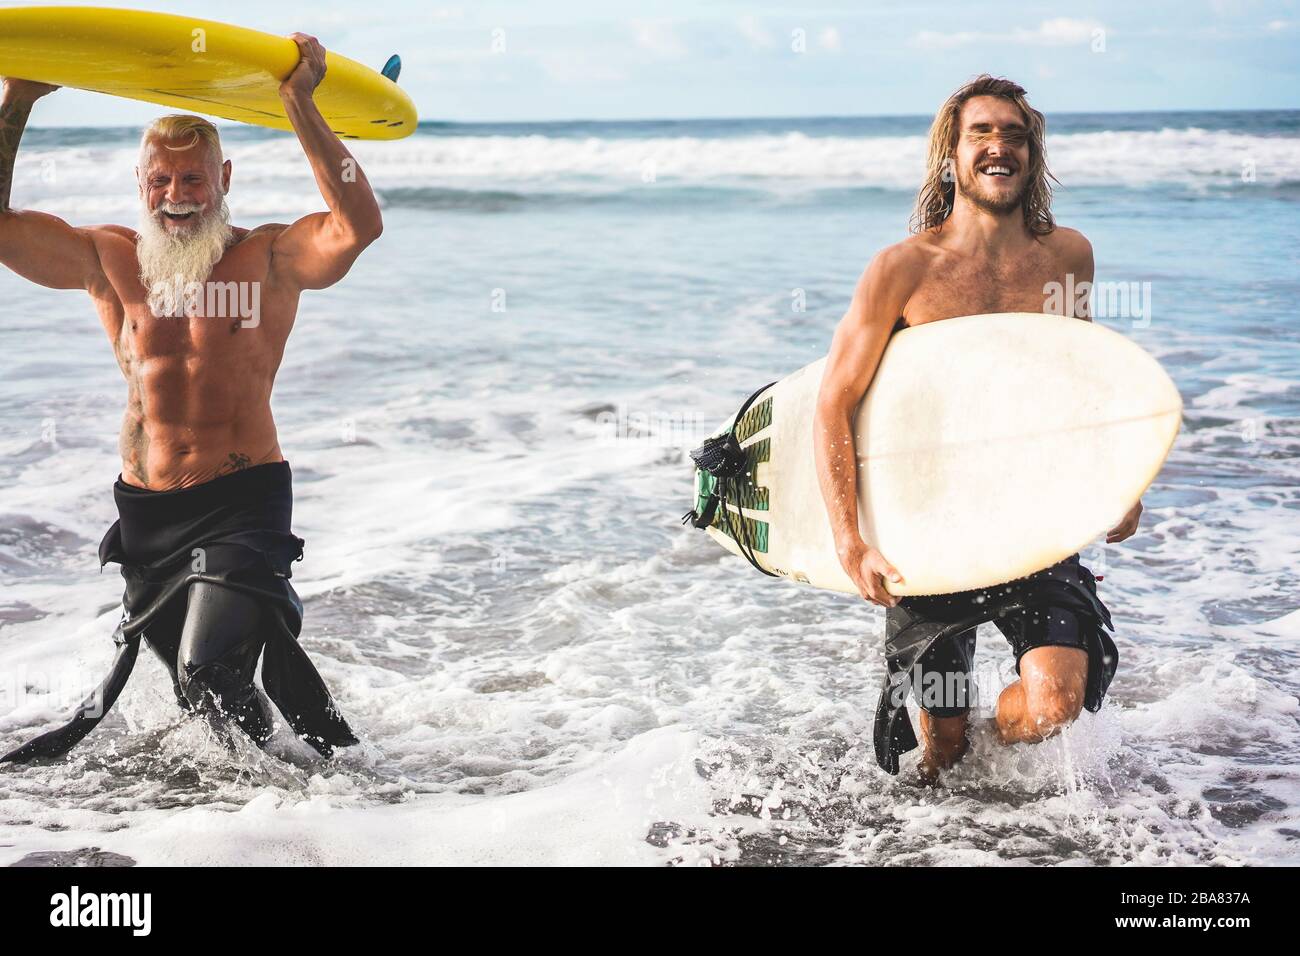 Mehrgenerationige Freunde, die am tropischen Strand surfen - Familienmitglieder haben Spaß am Extremsport - fröhliches älteres und gesundes Lifestyle-Konzept Stockfoto